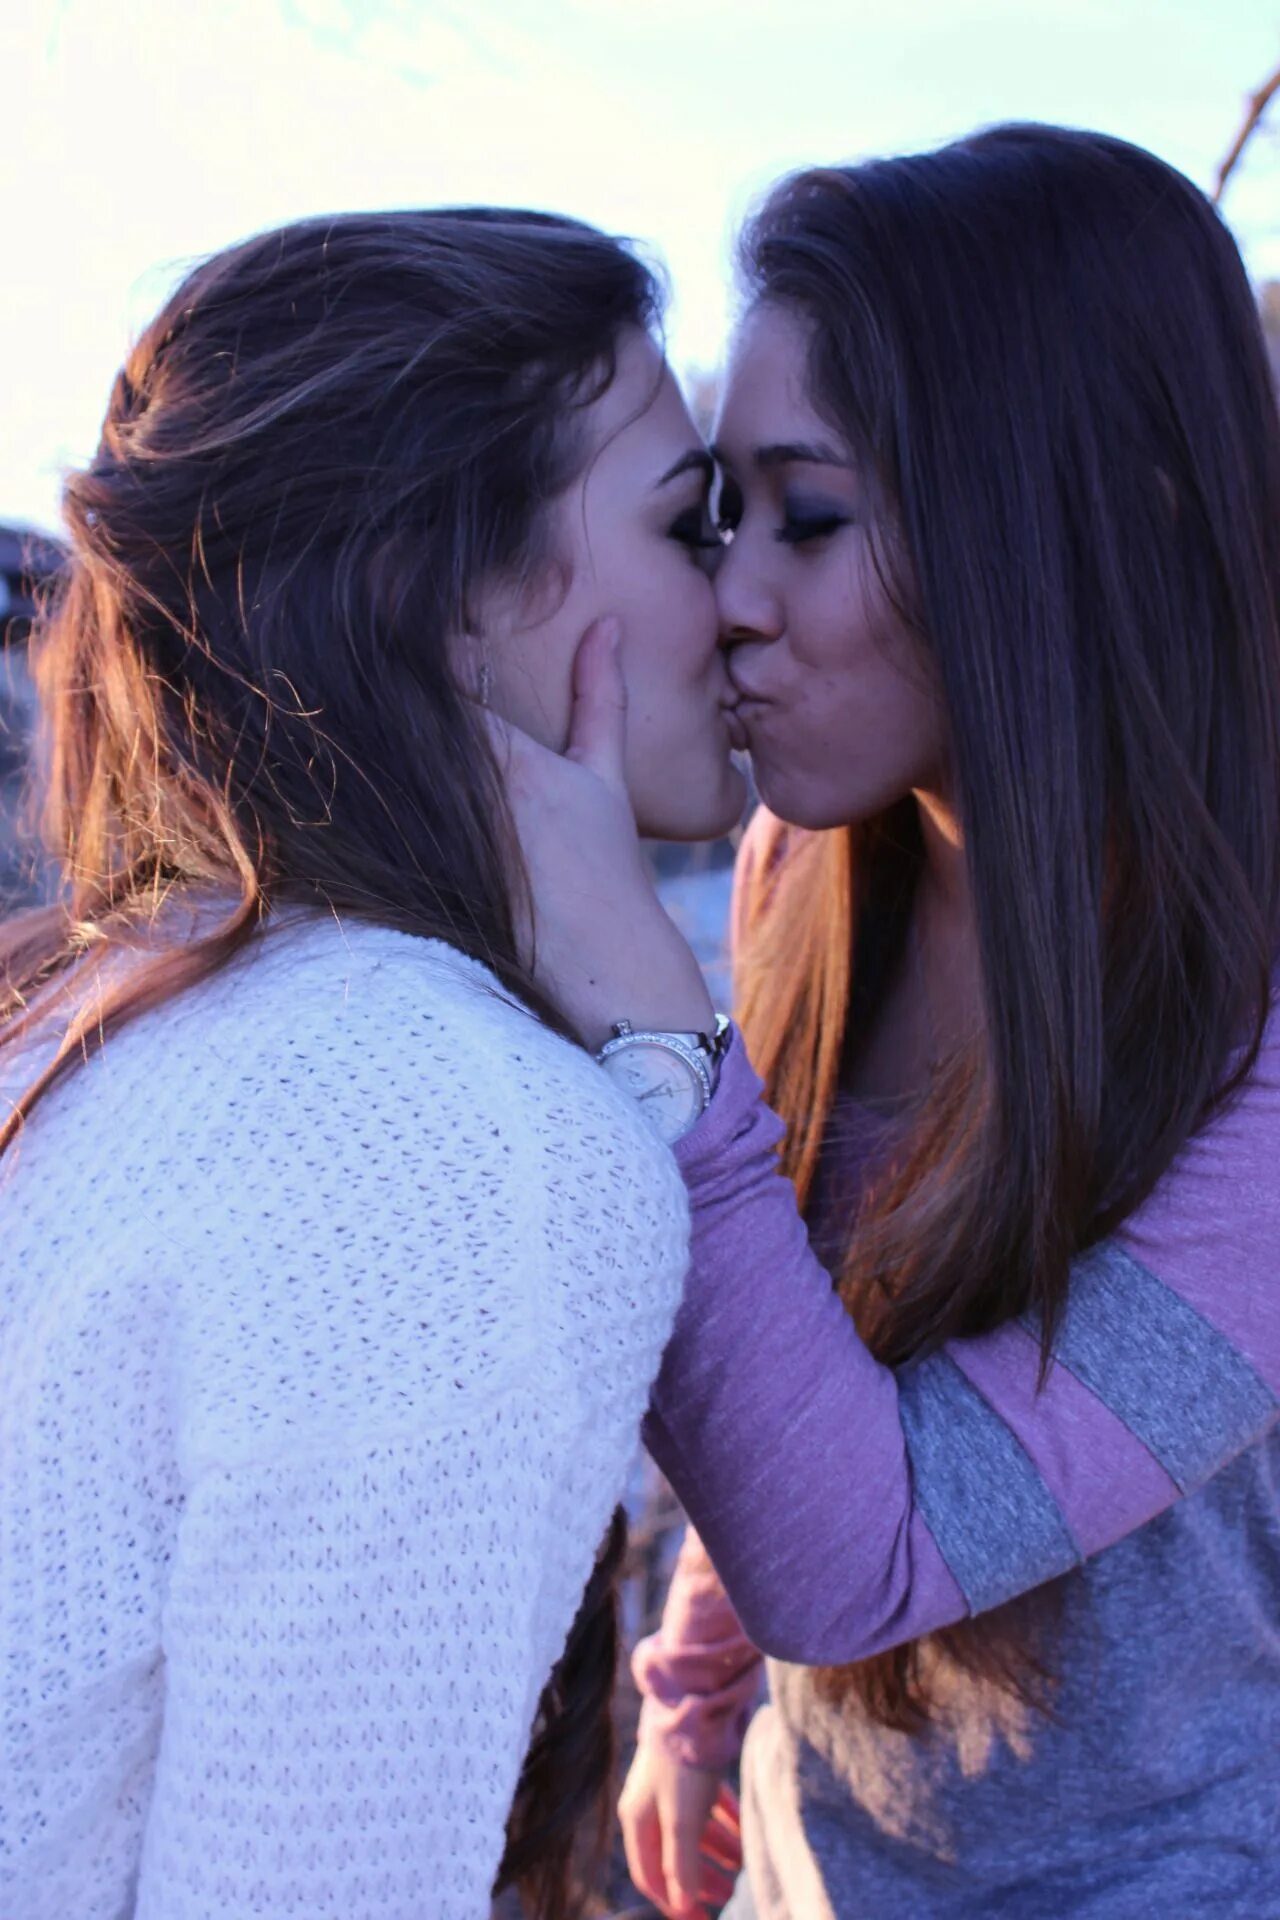 Two girlfriends Wallpaper. Pic lesbian Lebanese. Engage Kiss. Katrin ko lesbian photo.